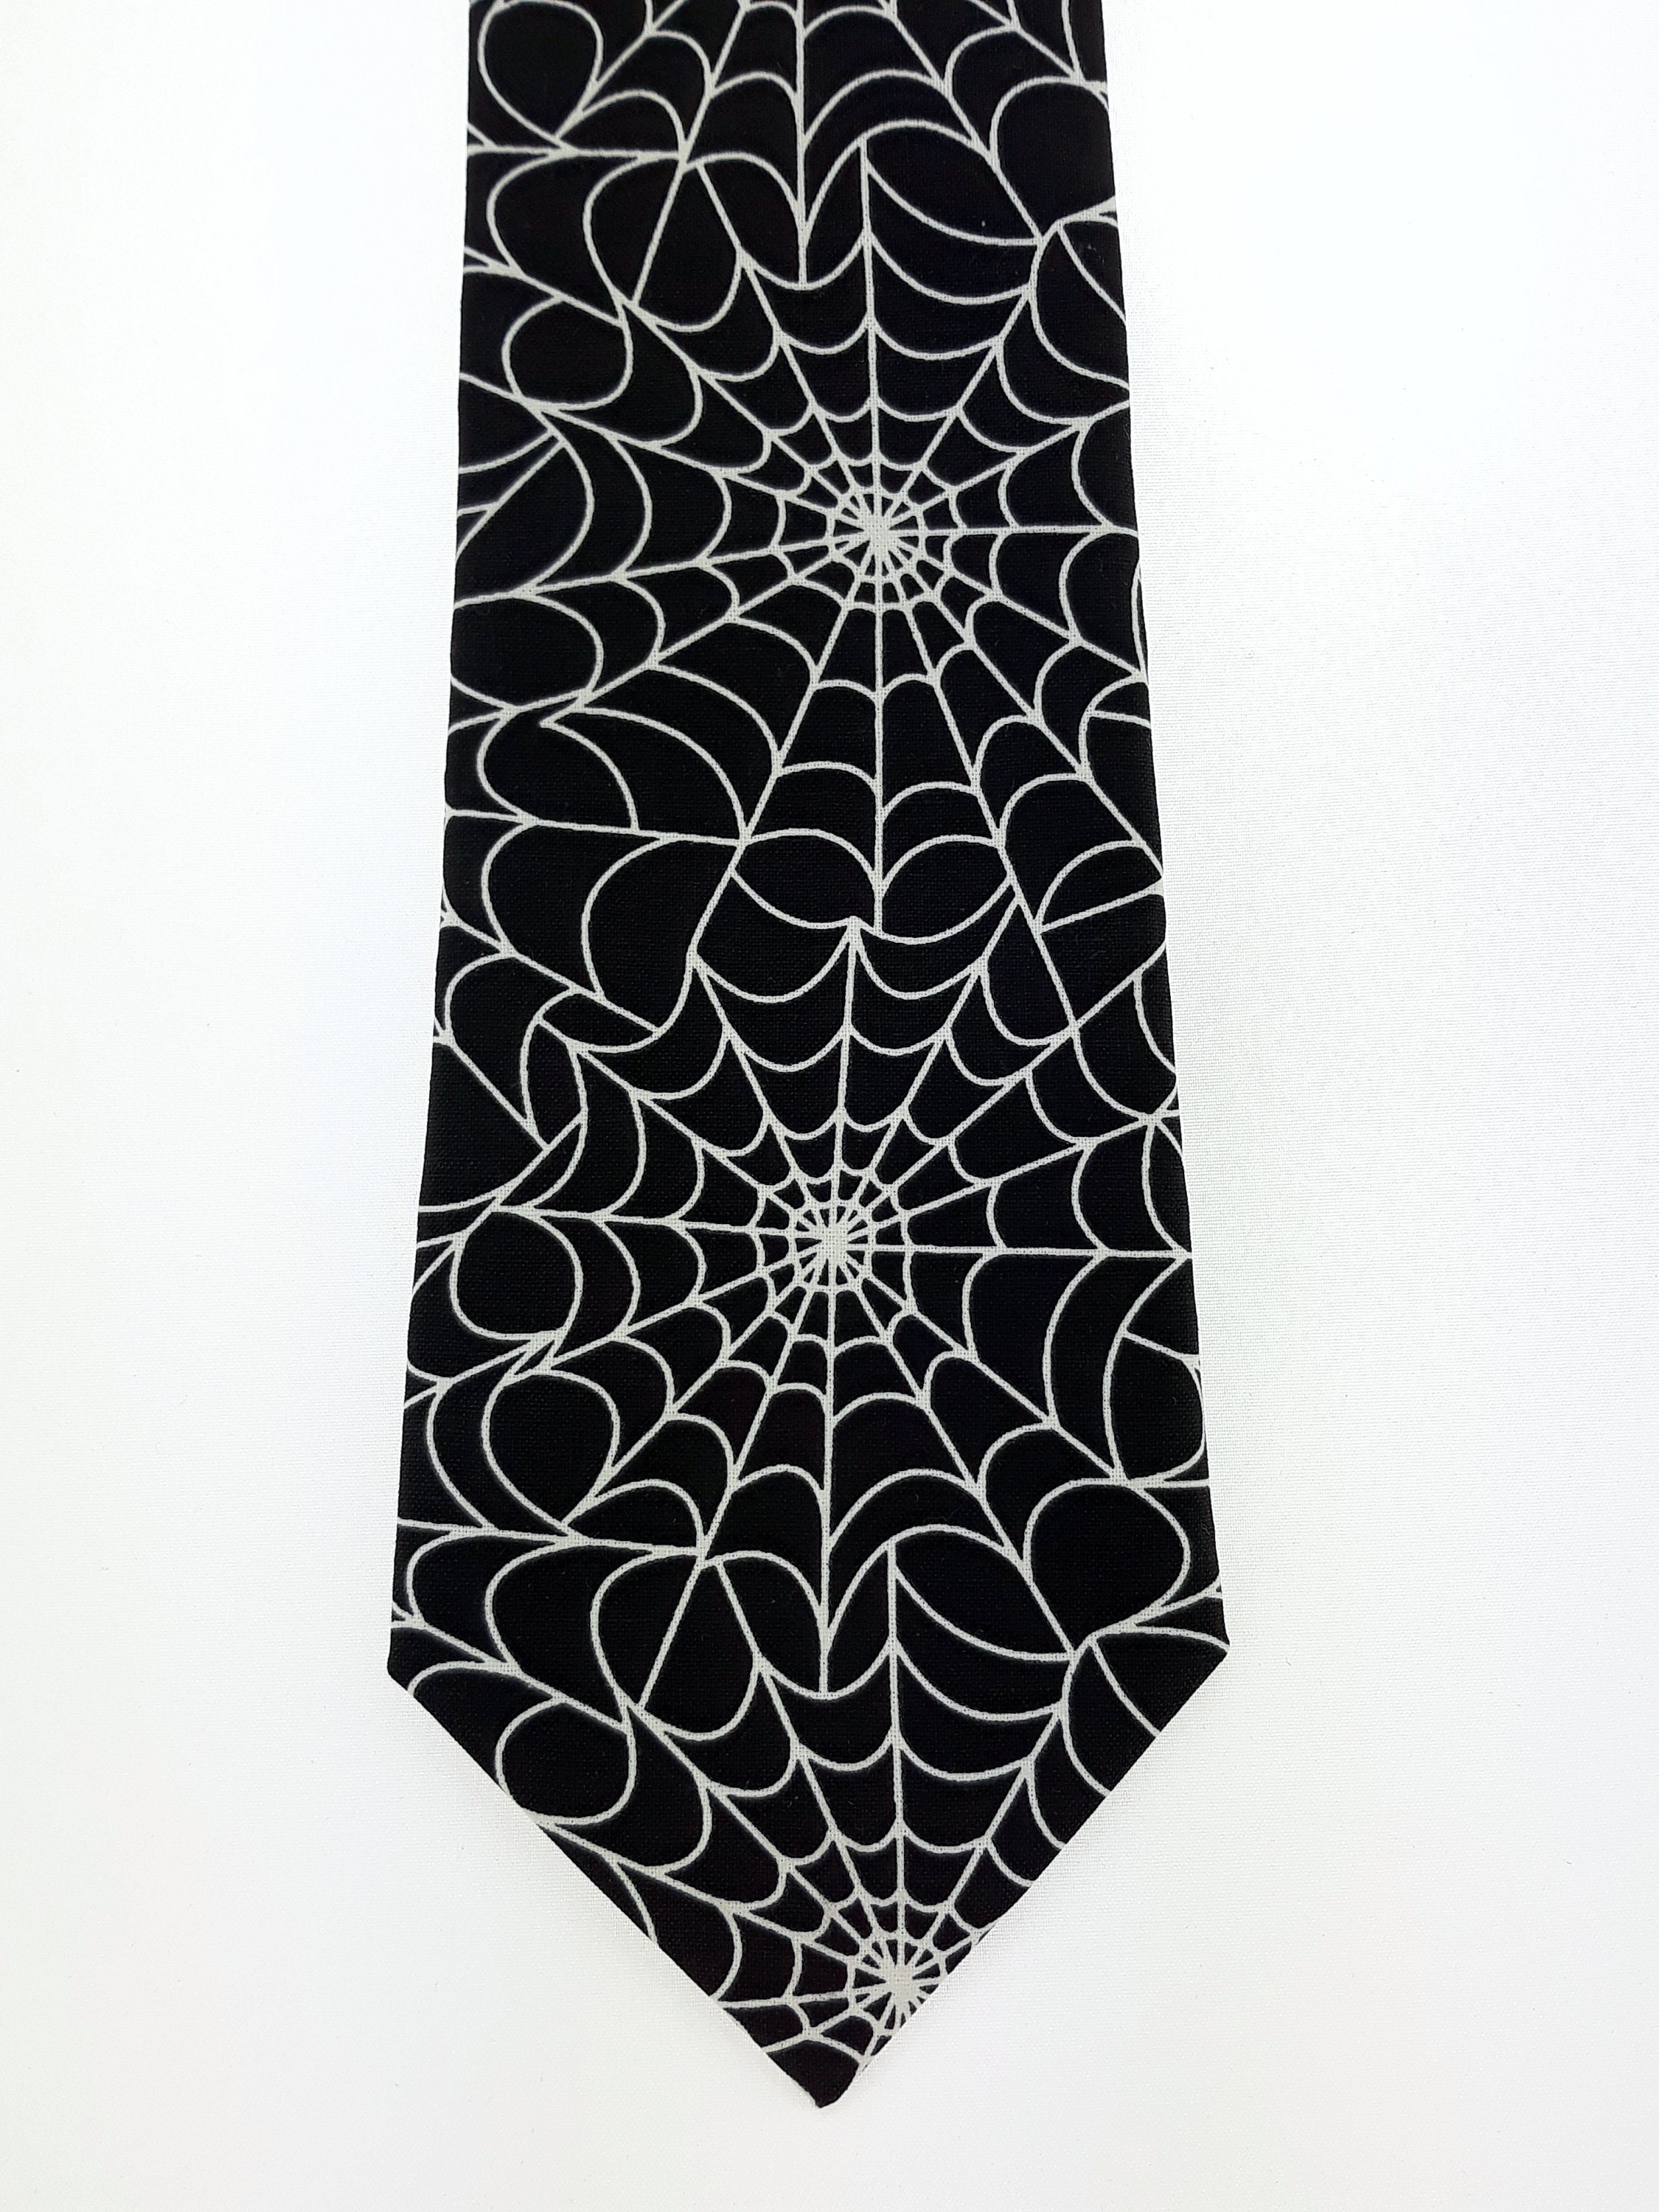 Spider Web Necktie –Goth Spiderweb Tie for Halloween or everyday.